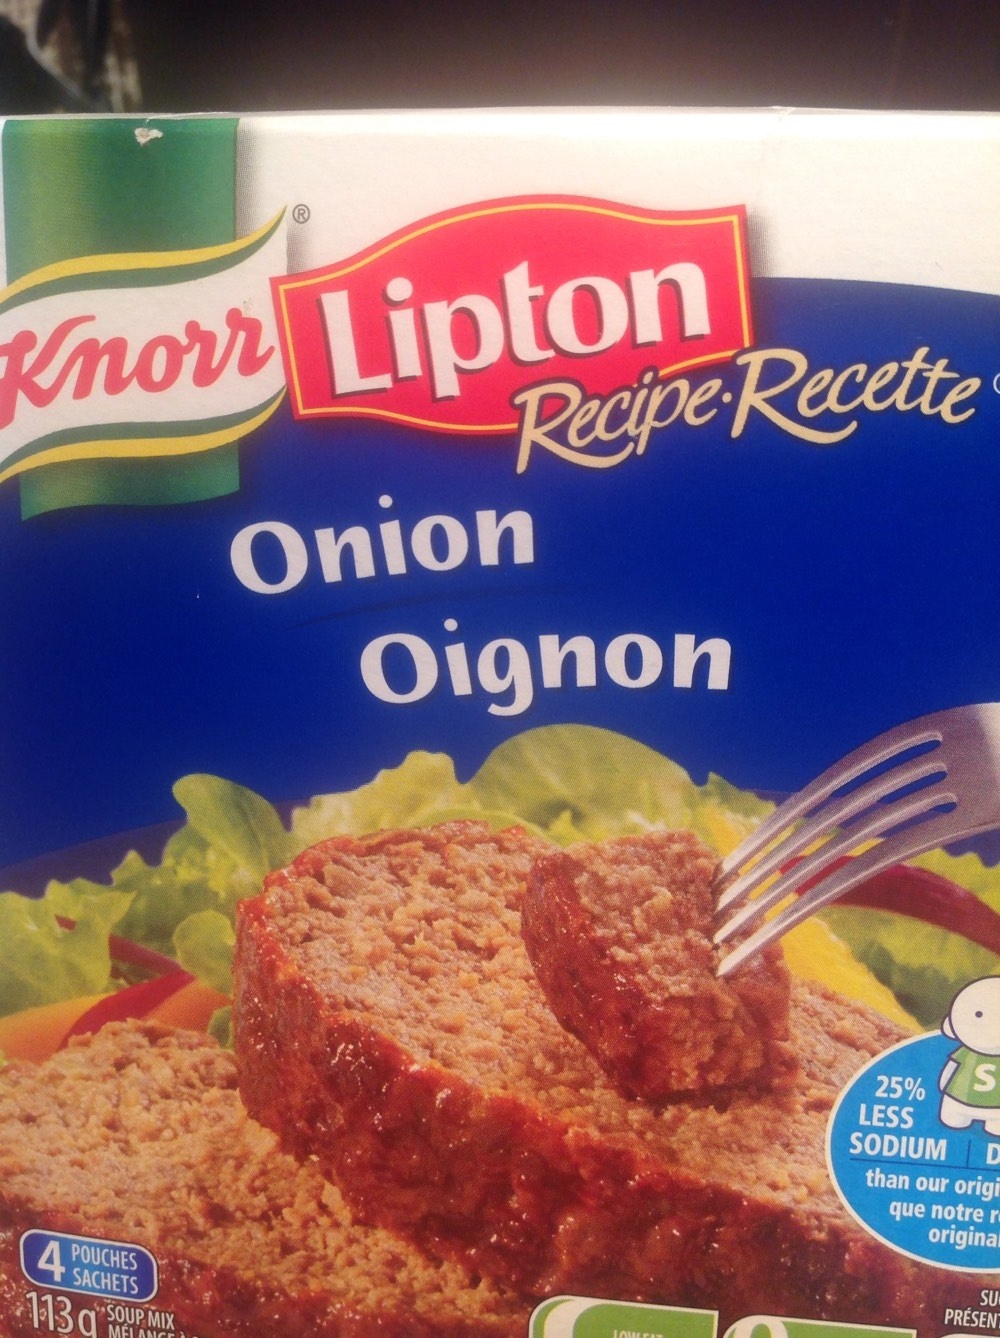 Recette oignon - Product - fr